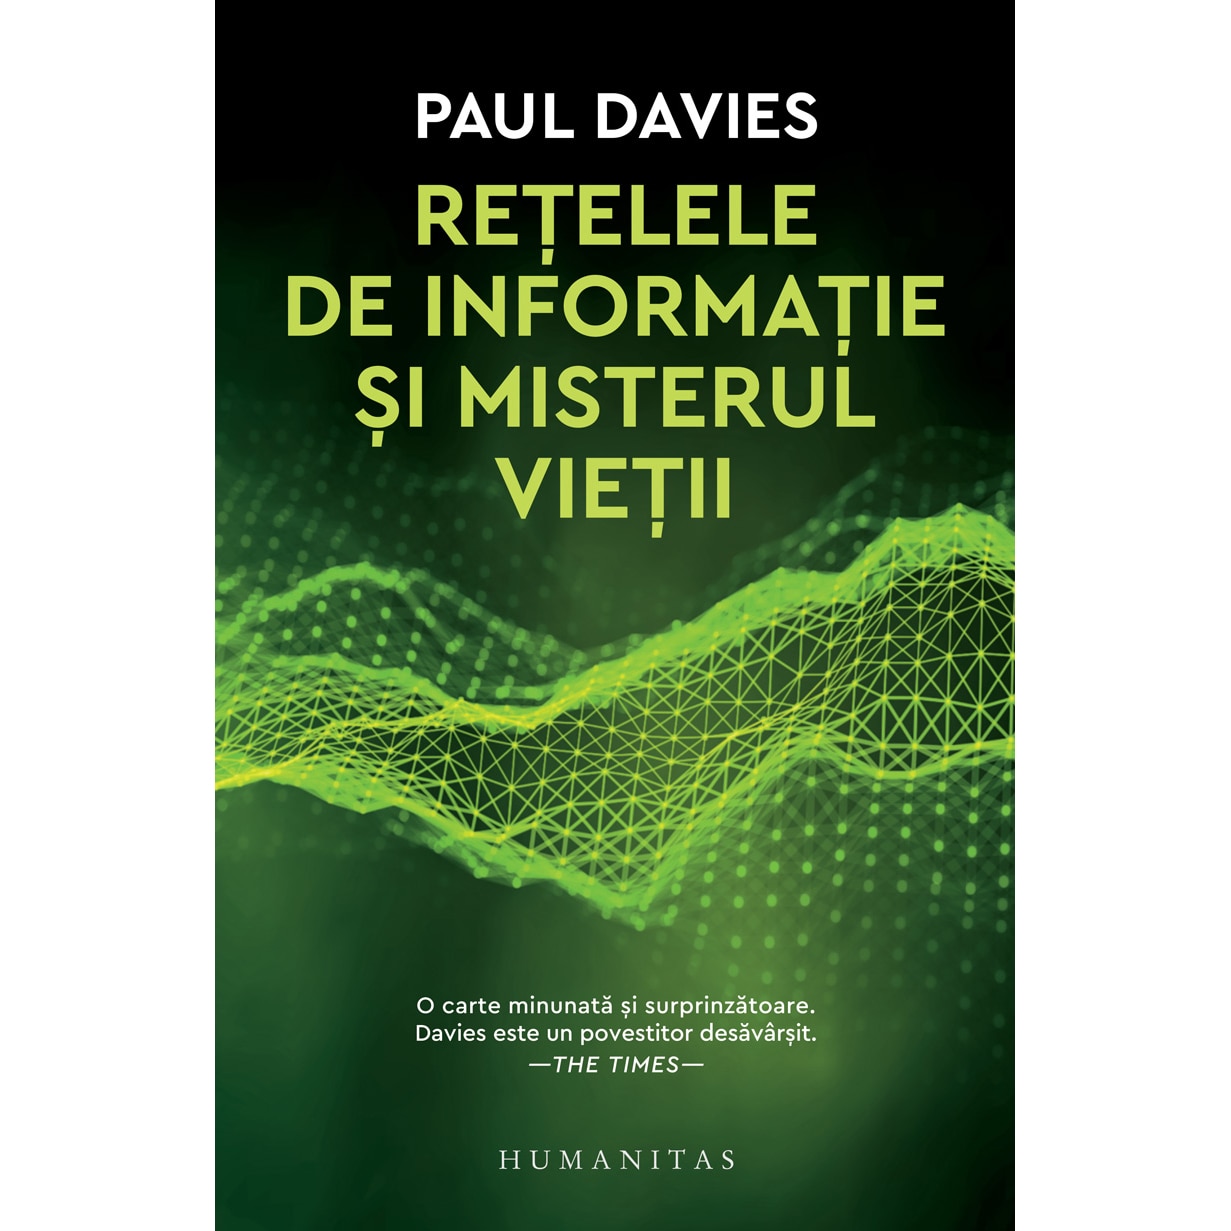 stomach ache critic assistance Retelele de informatie si misterul vietii, Paul Davies - eMAG.ro